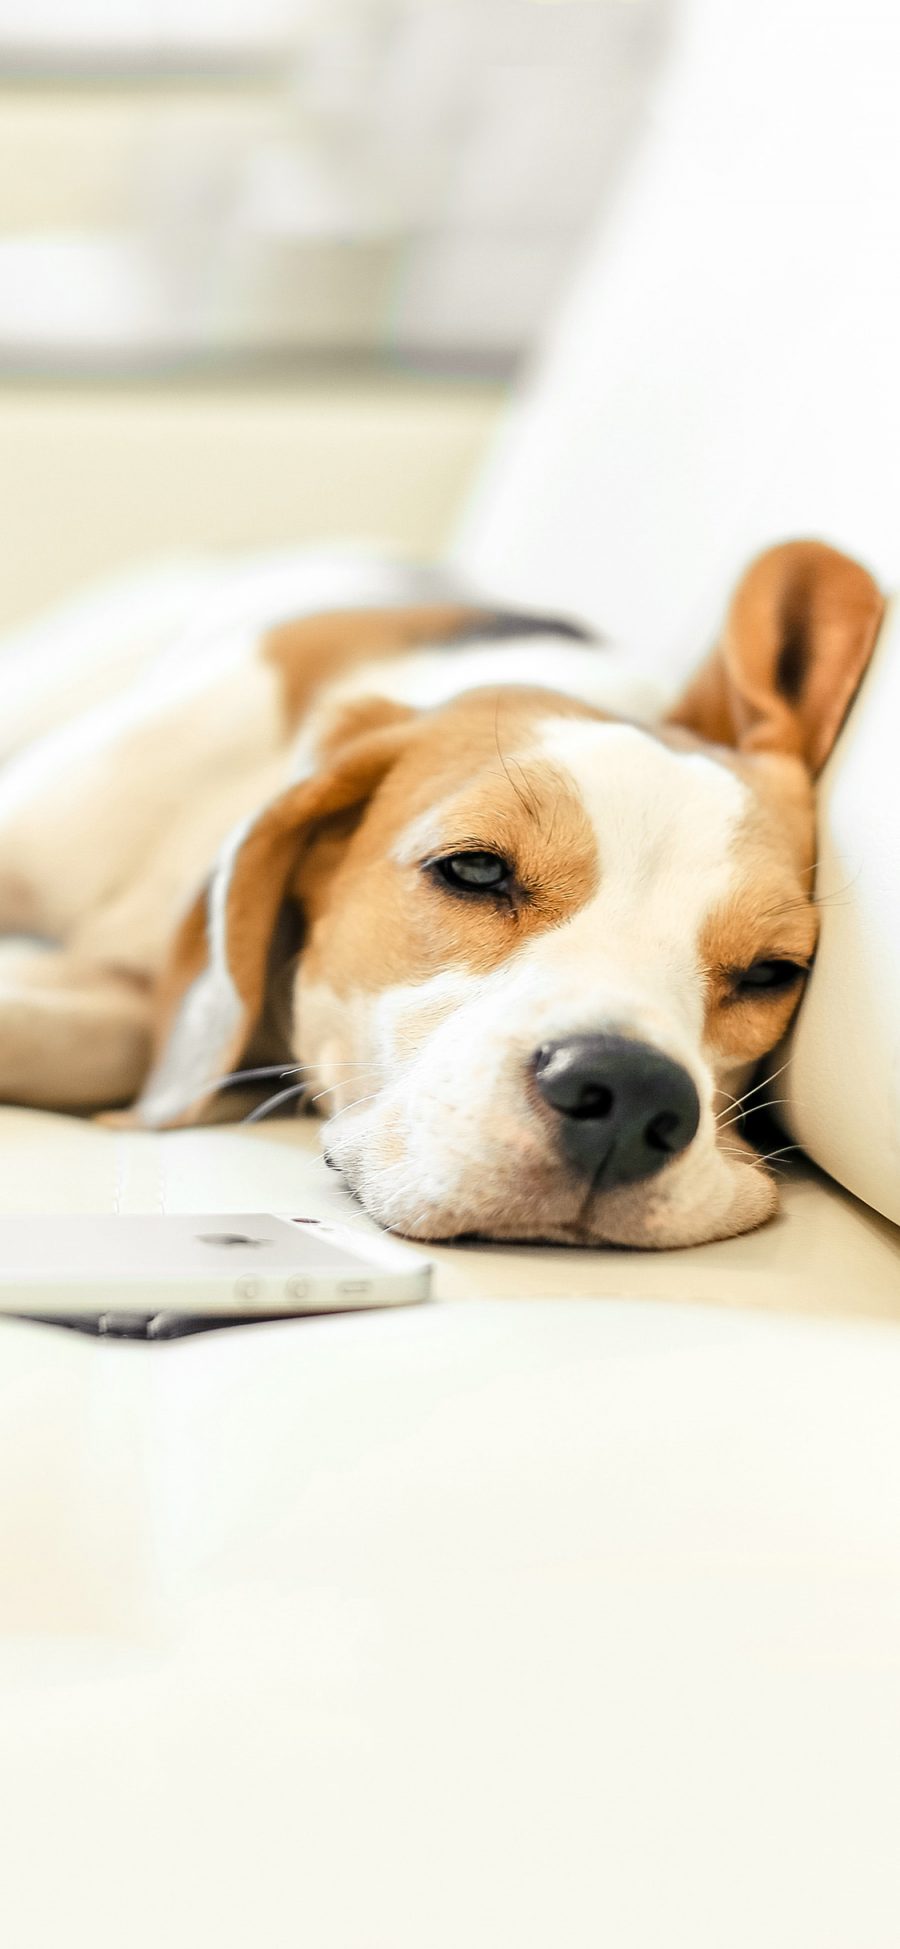 [2436×1125]宠物狗 比格犬 睡觉 可爱 苹果手机壁纸图片